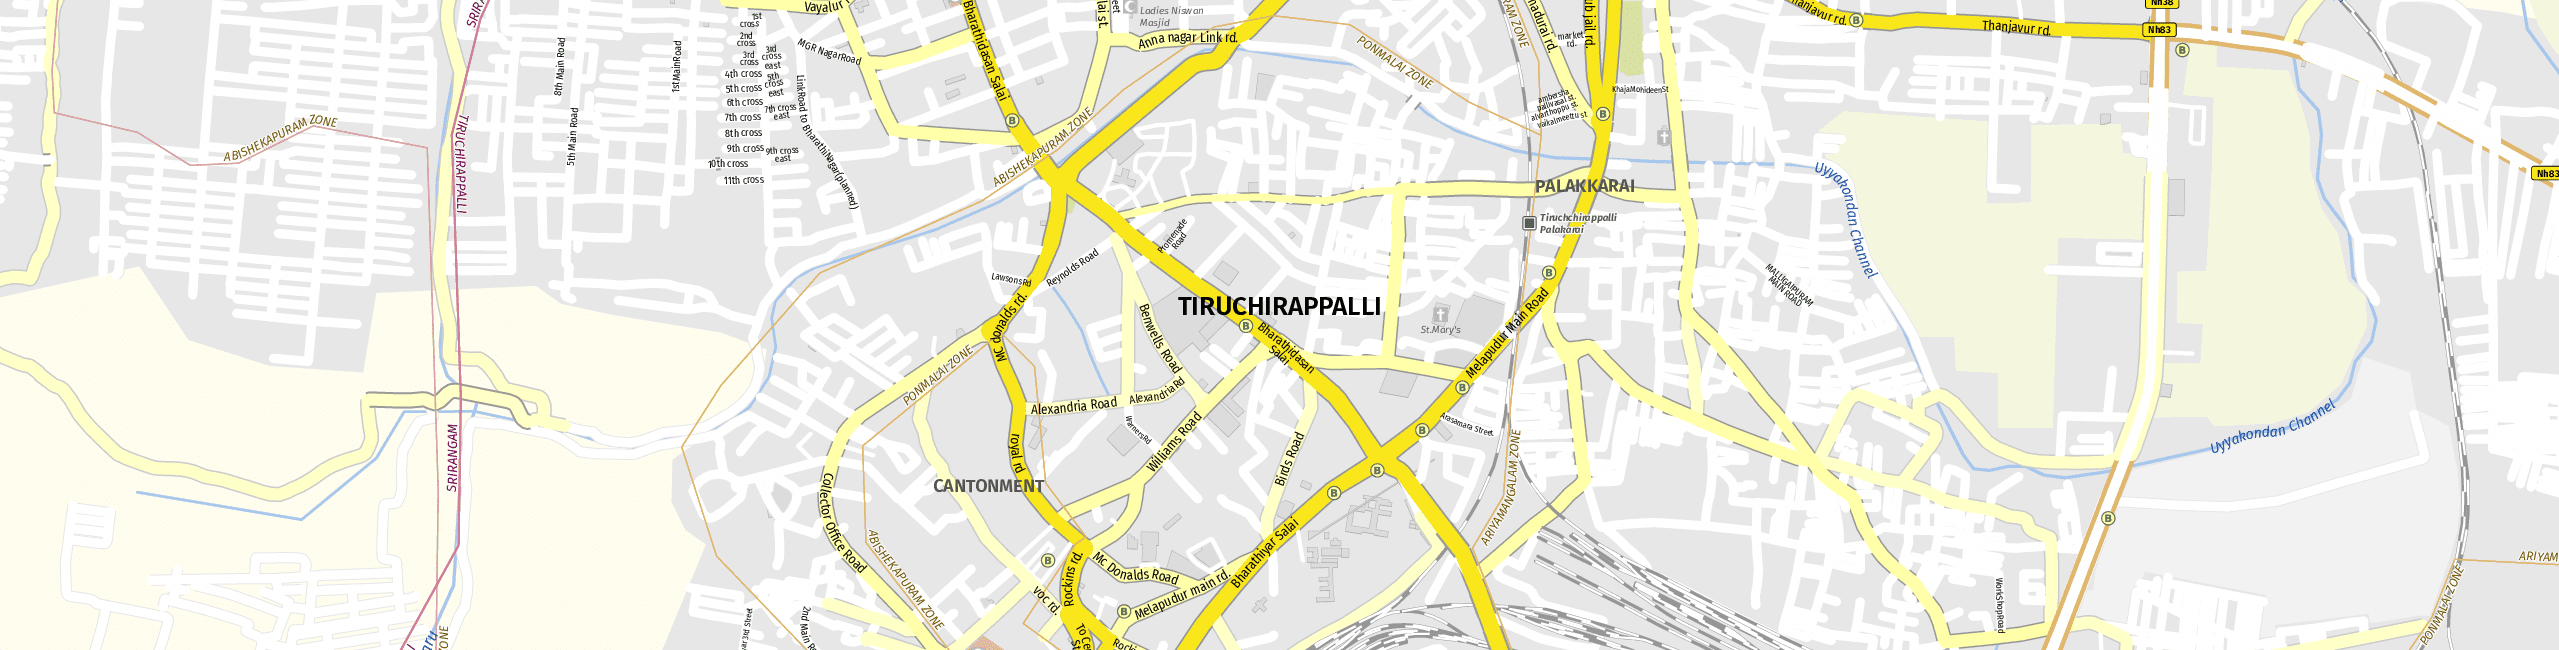 Stadtplan Tiruchirappalli zum Downloaden.